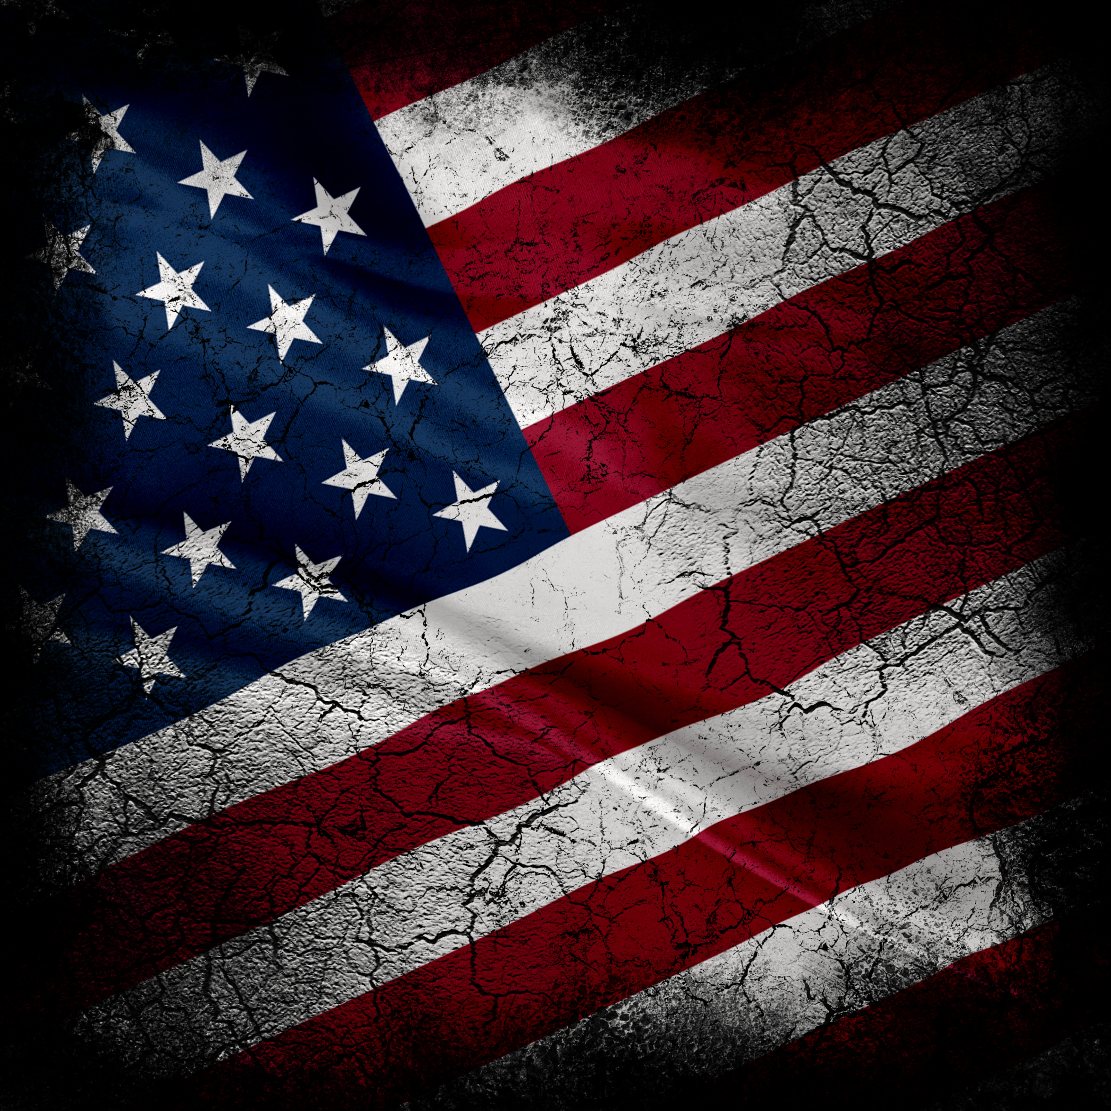 USA-flaga-Depositphotos_2026518_original-1111x1111px